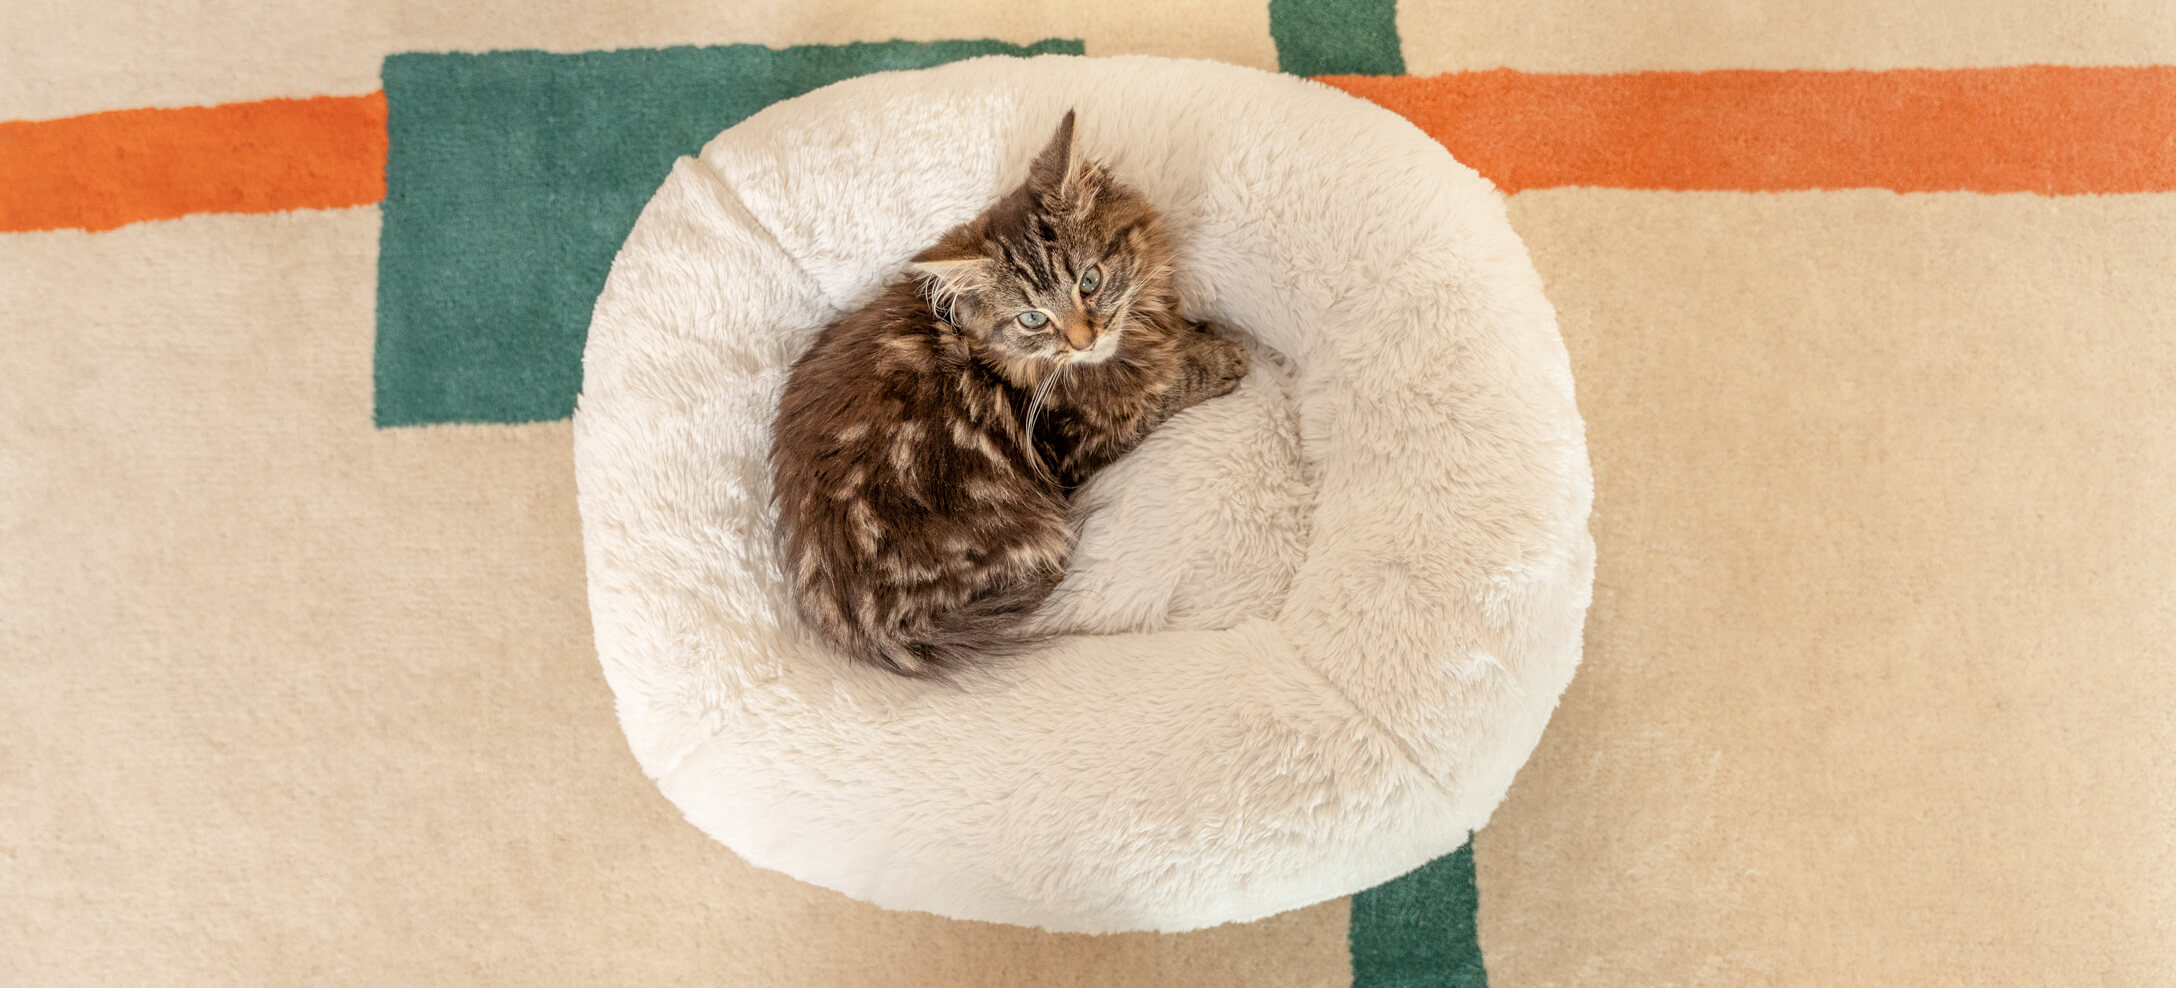 A tabby kitten sleeping in a donut shaped bed